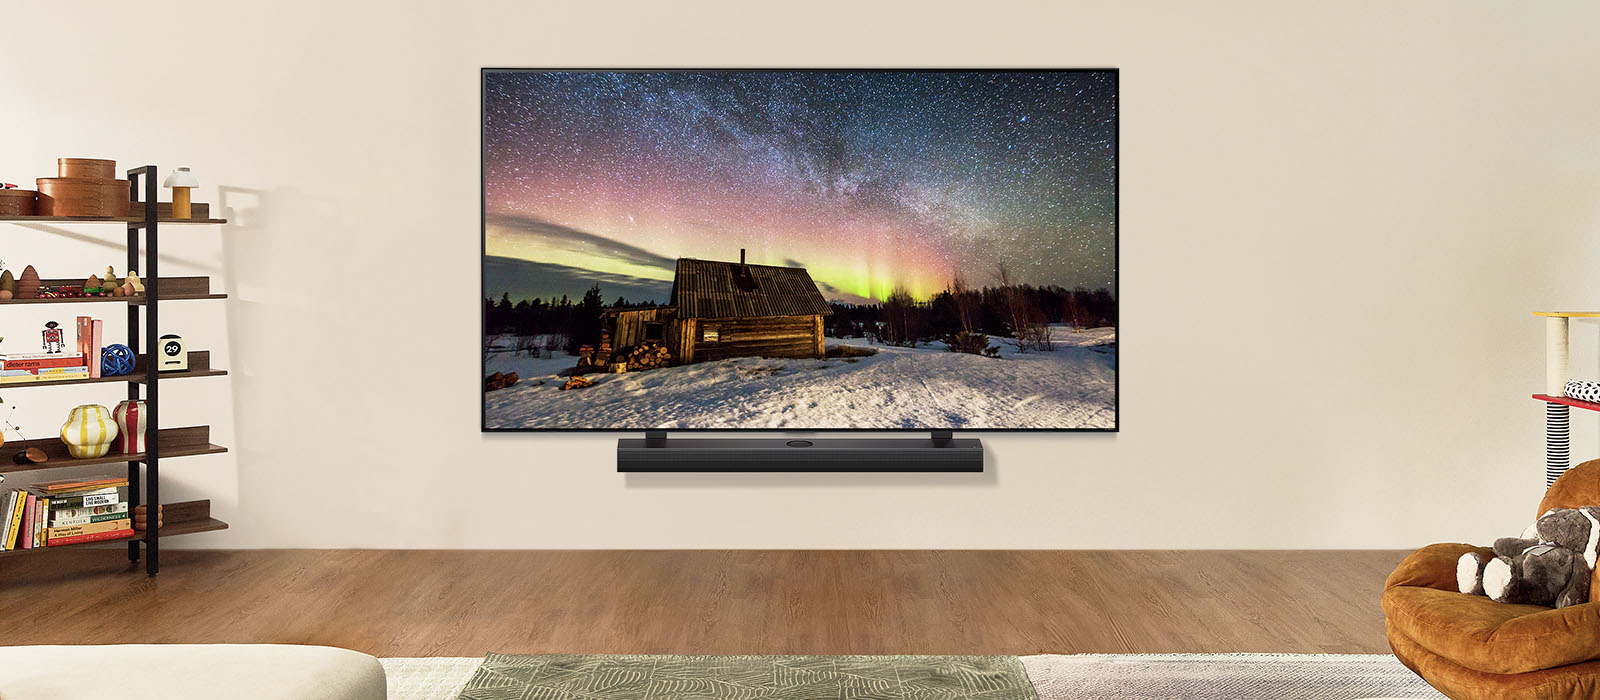 LG TV và LG Soundbar trong không gian sống hiện đại vào ban ngày. Hình ảnh màn hình cực quang được hiển thị với mức độ sáng lý tưởng.